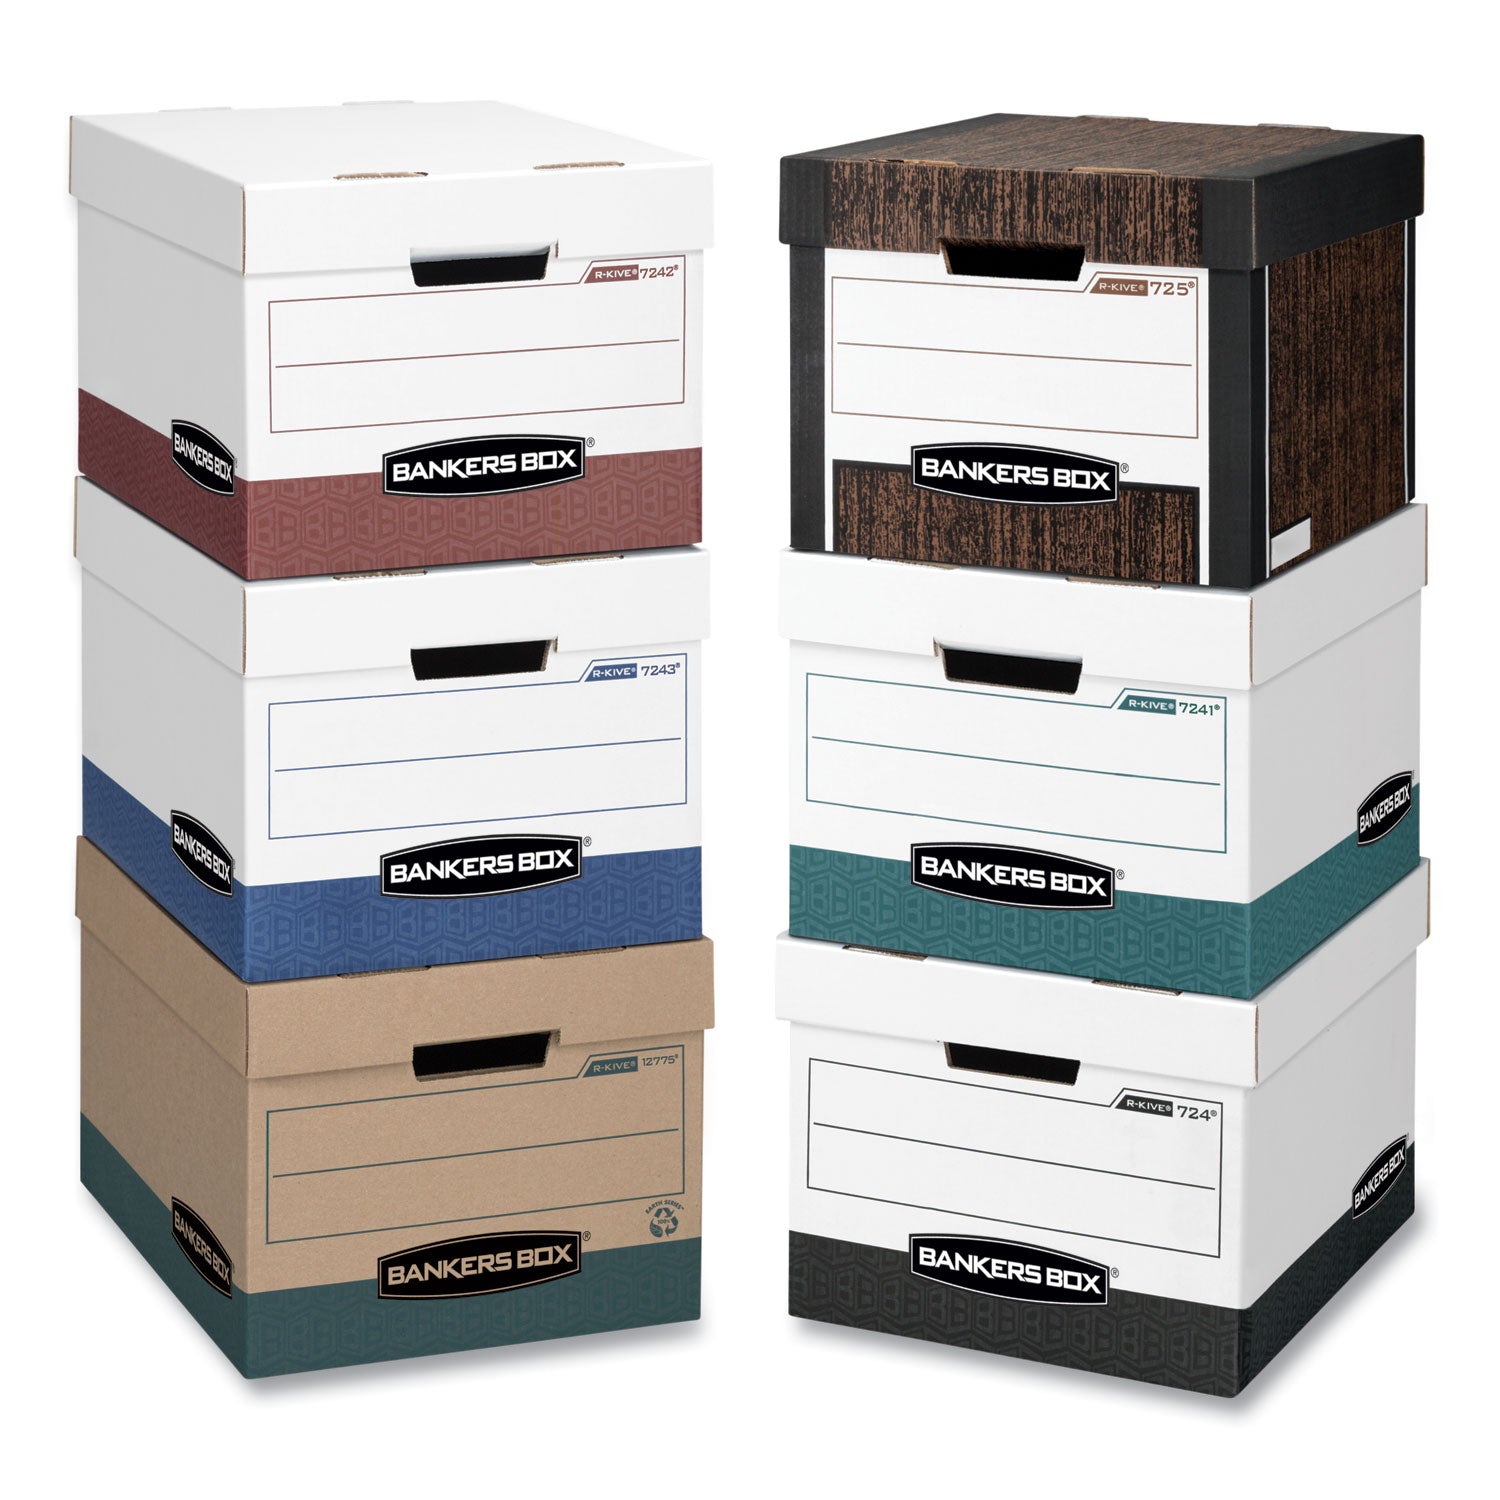 R-KIVE Heavy-Duty Storage Boxes, Letter/Legal Files, 12.75" x 16.5" x 10.38", White/Green, 12/Carton - 